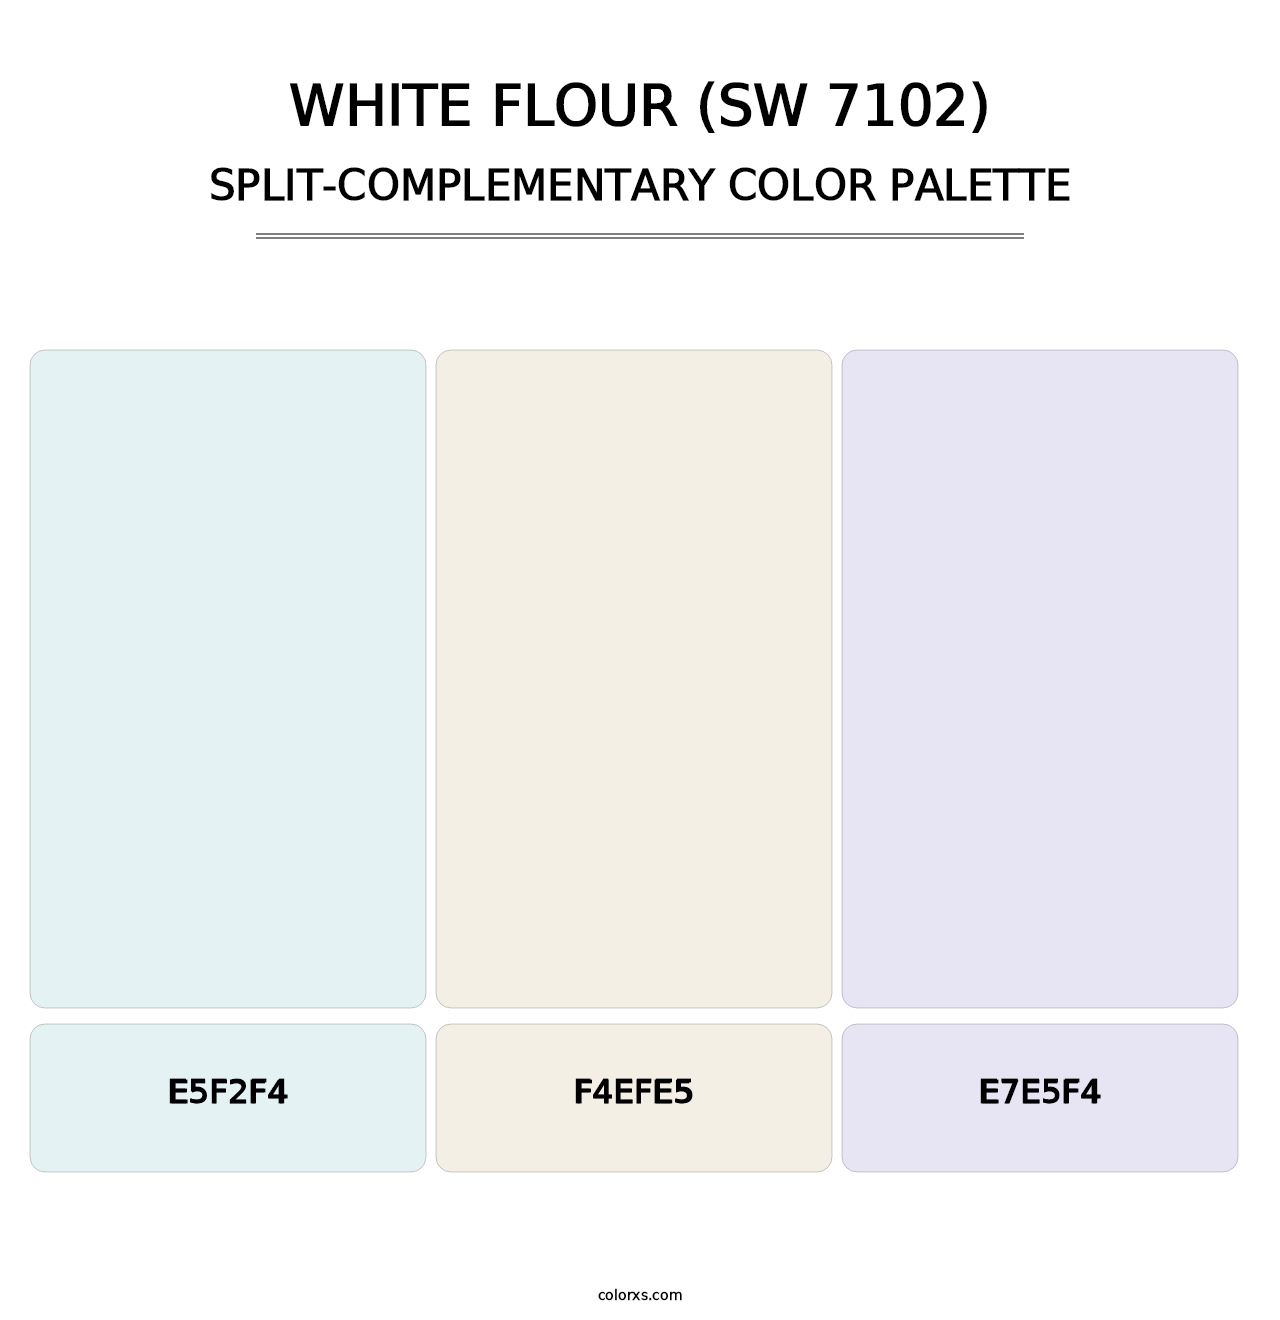 White Flour (SW 7102) - Split-Complementary Color Palette